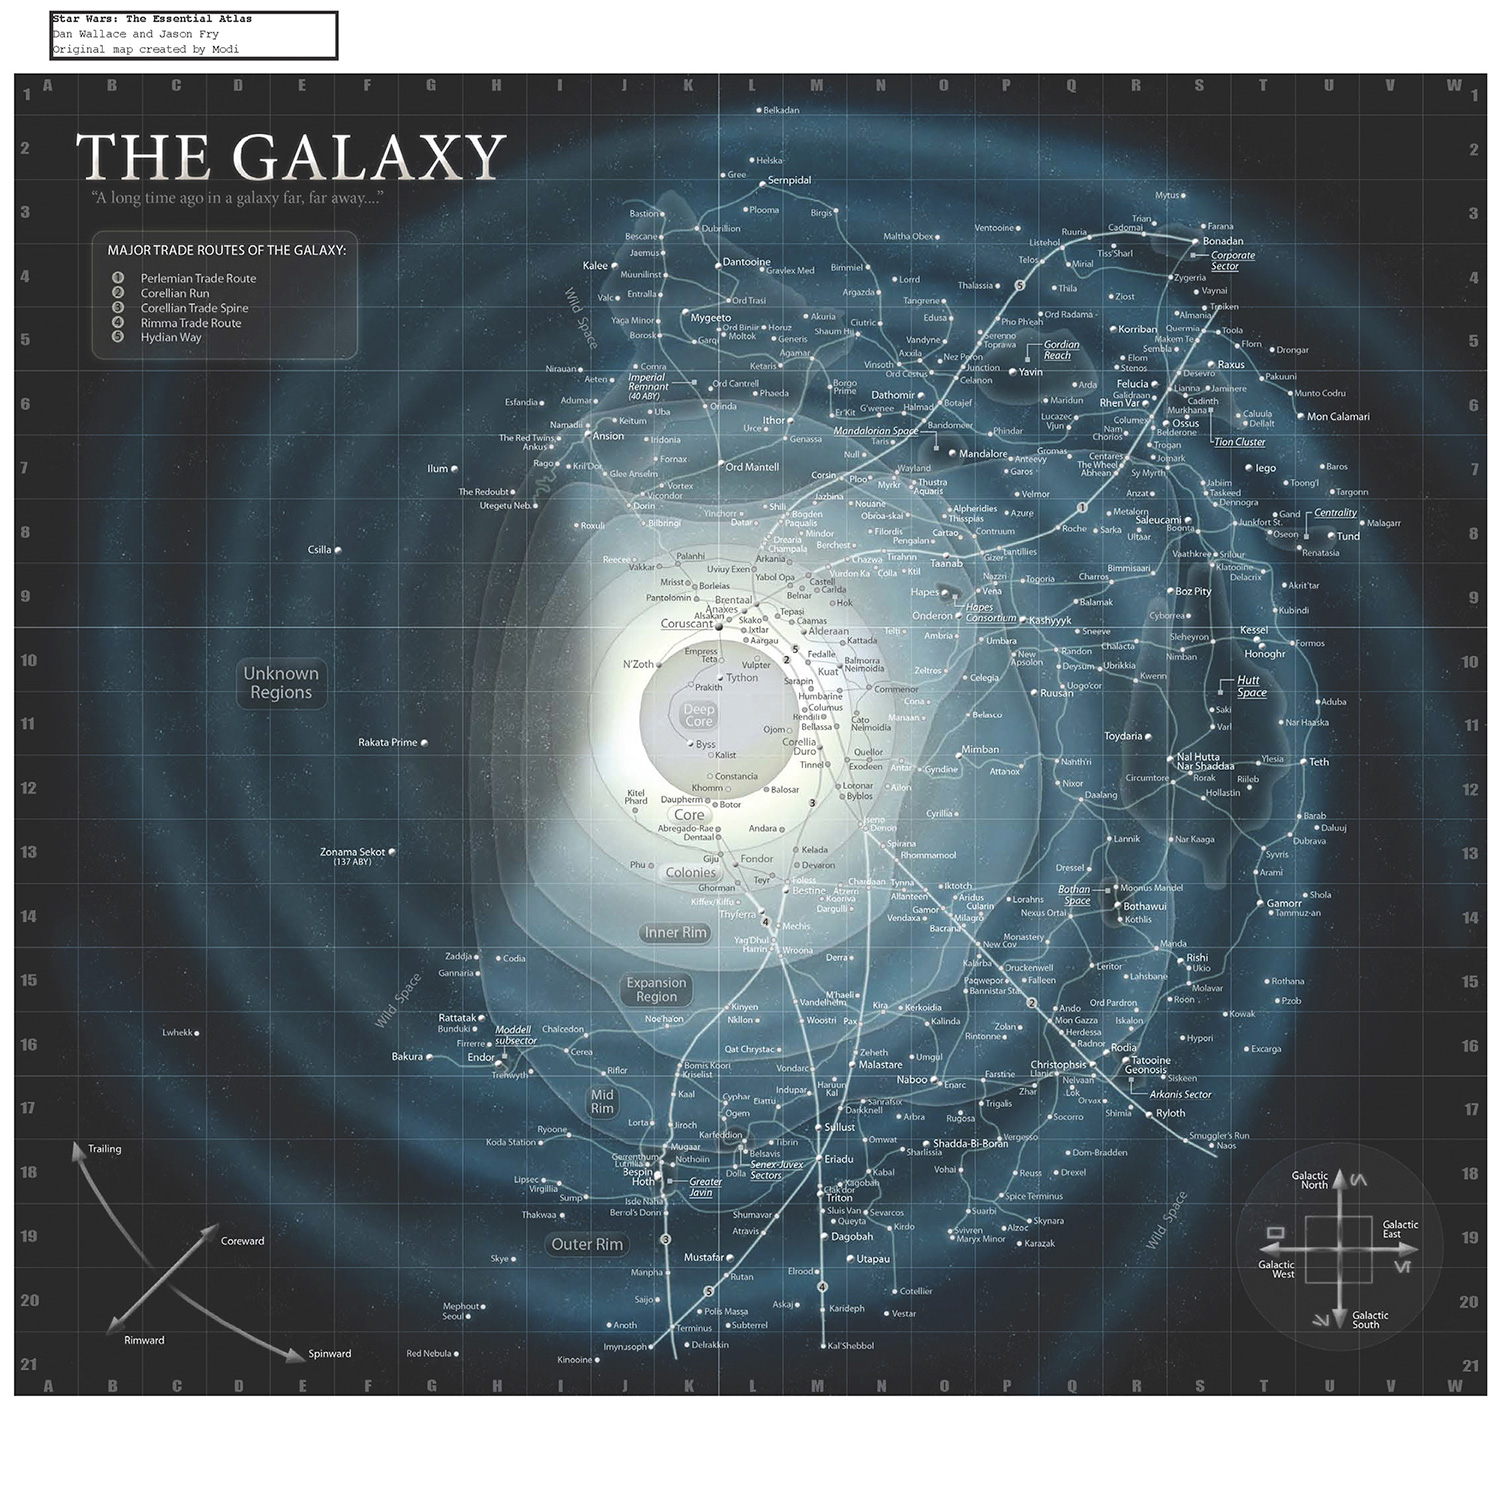 Carte de la galaxie de Star Wars